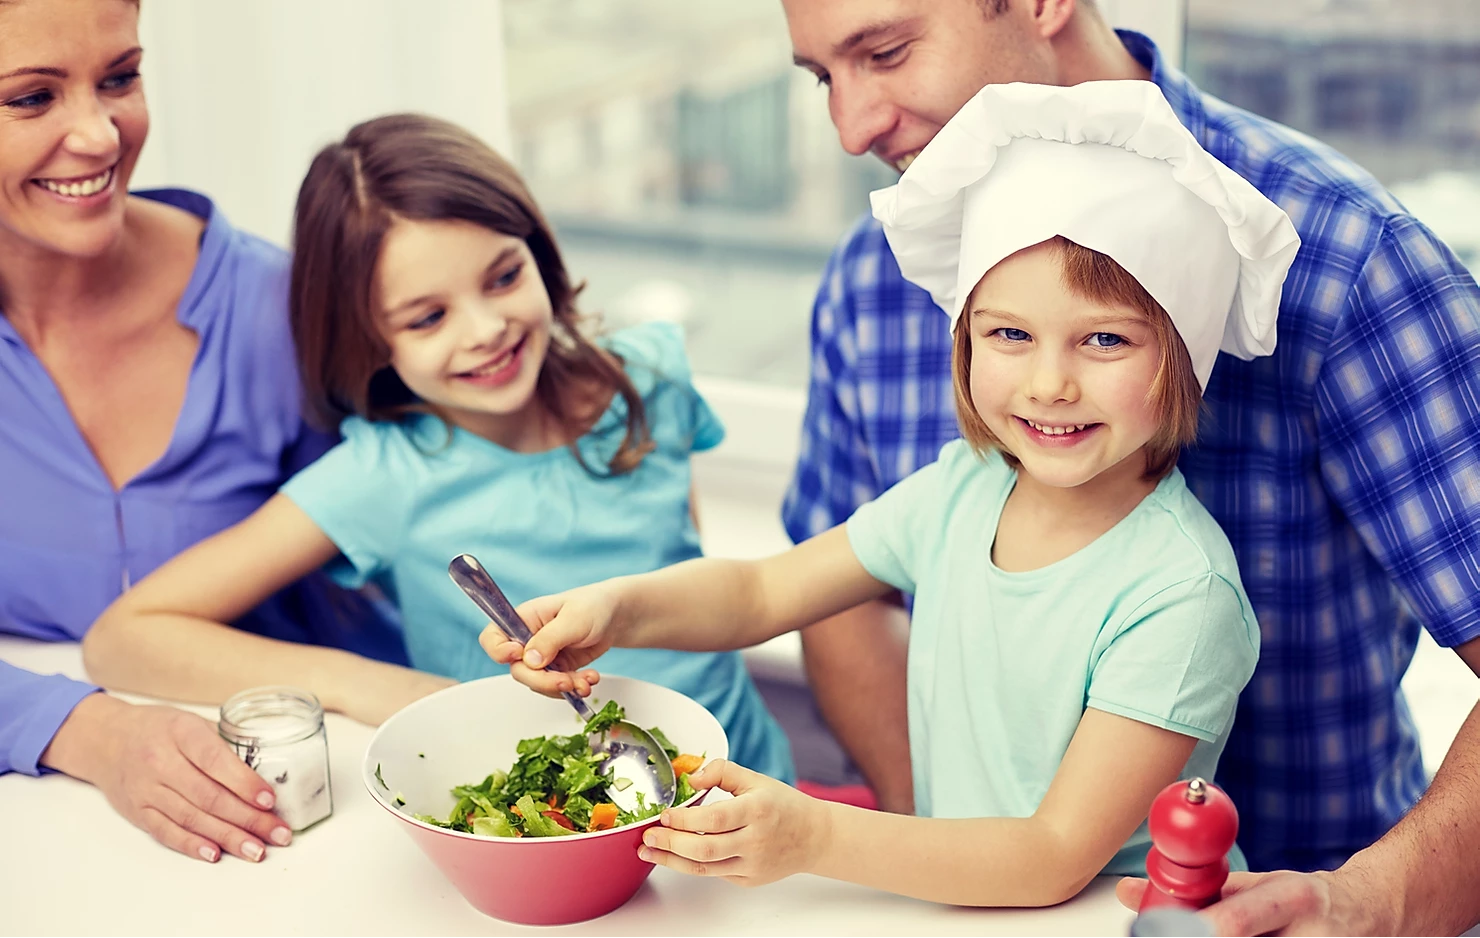 Приготовление еды детьми. Обед для детей. Семья на кухне. Здоровое питание в семье. Совместная готовка с детьми.